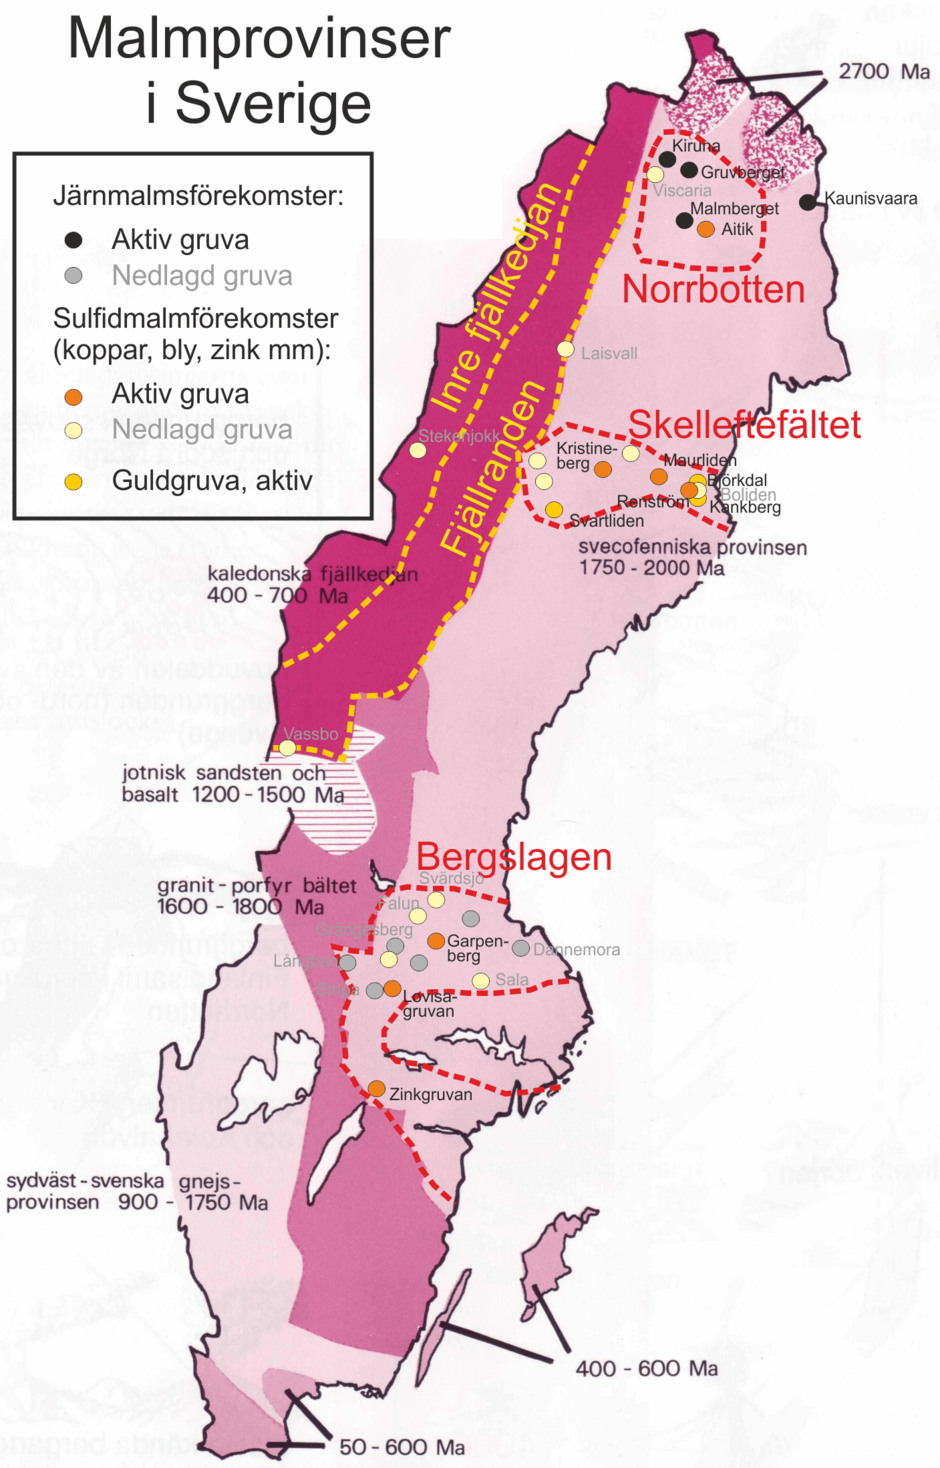 Malmprovinser i Sverige, med aktiva gruvor och större numera nedlagda gruvor, inlagda på en mycket förenklad geologisk karta över Sverige.